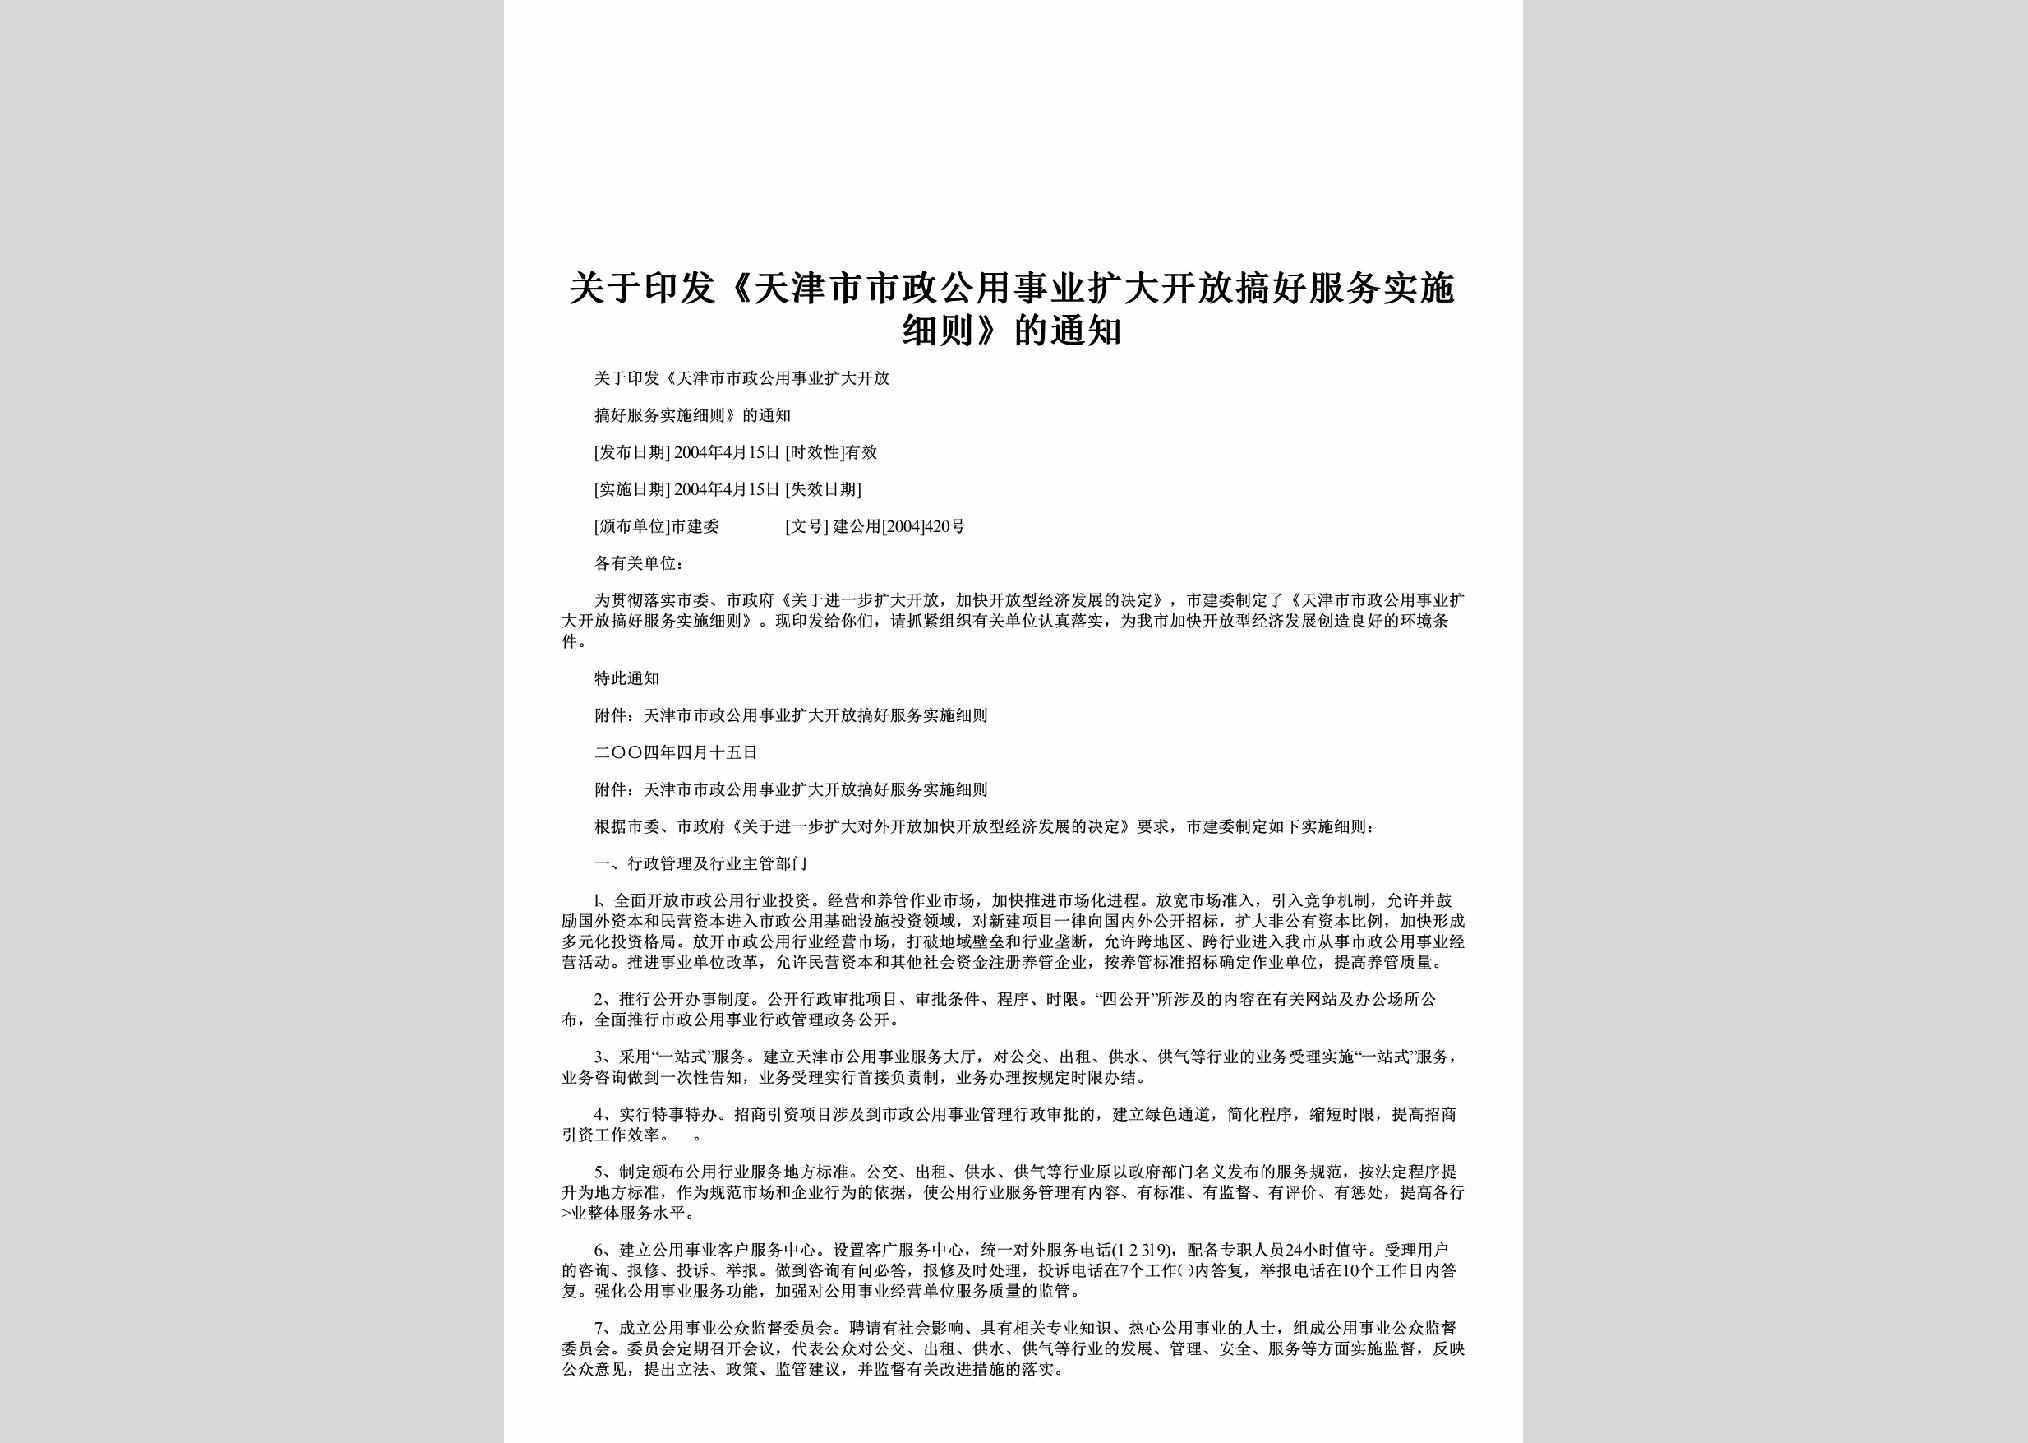 建公用[2004]420号：关于印发《天津市市政公用事业扩大开放搞好服务实施细则》的通知